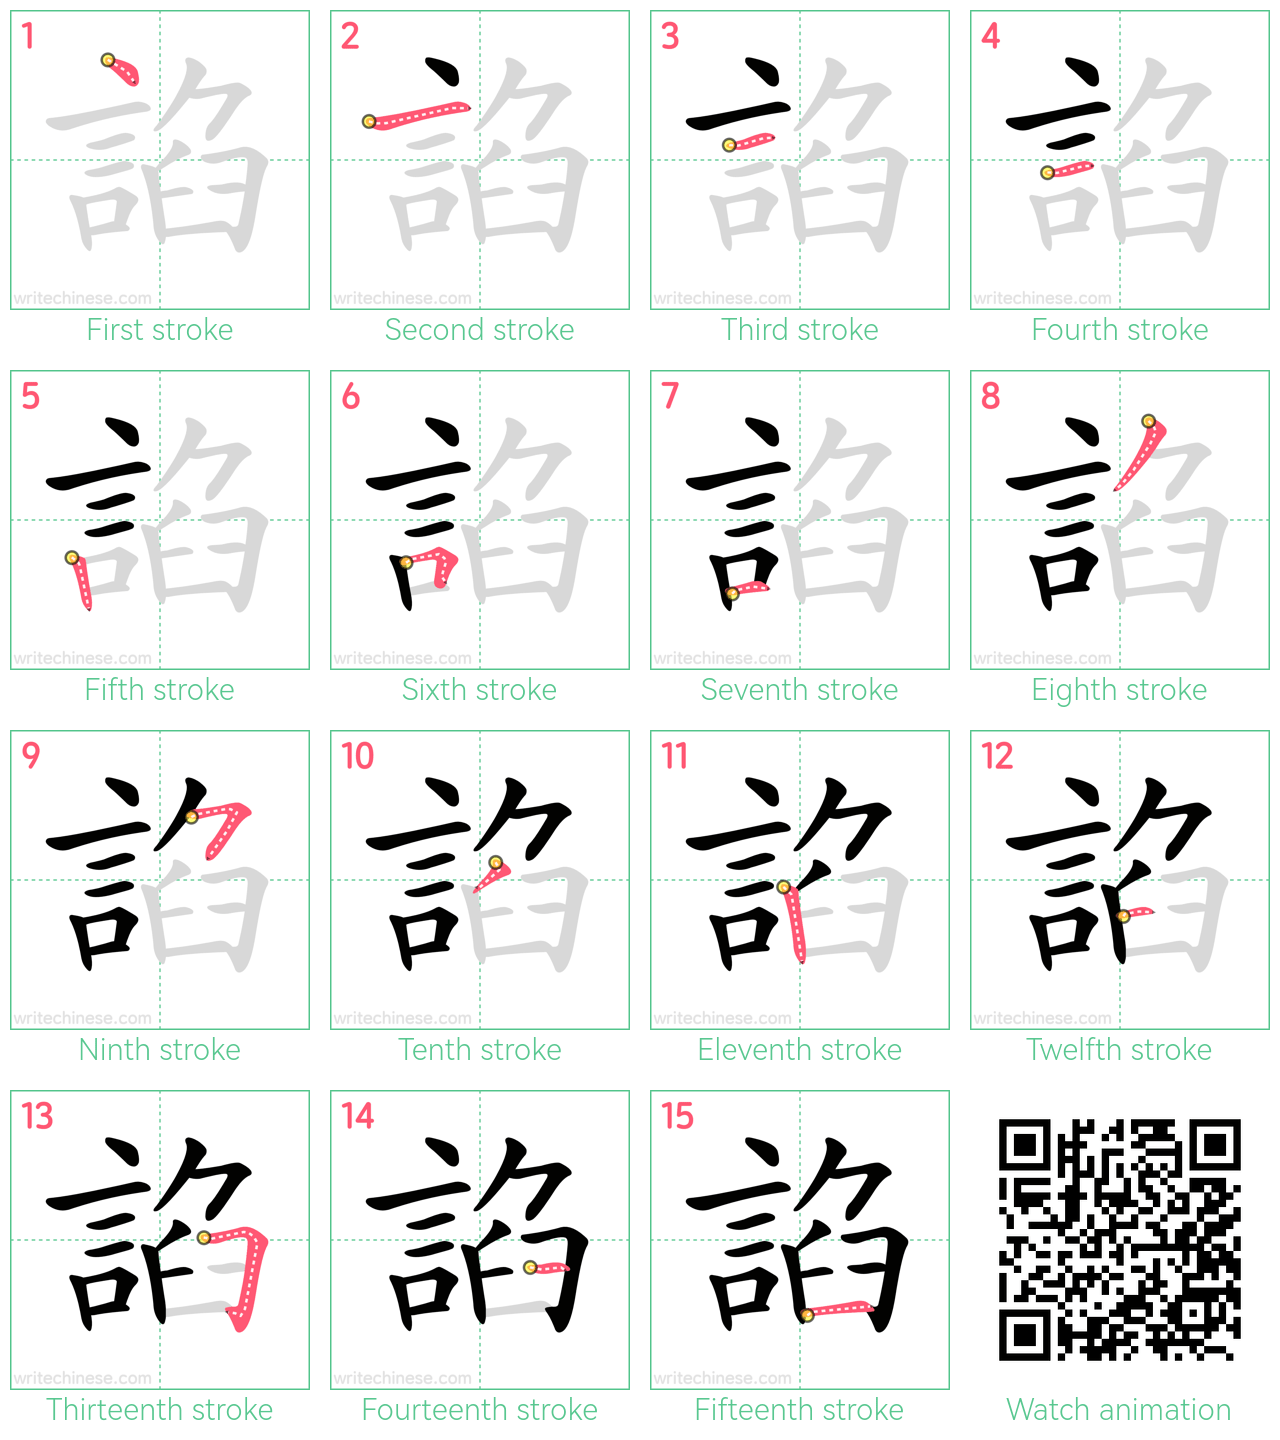 諂 step-by-step stroke order diagrams